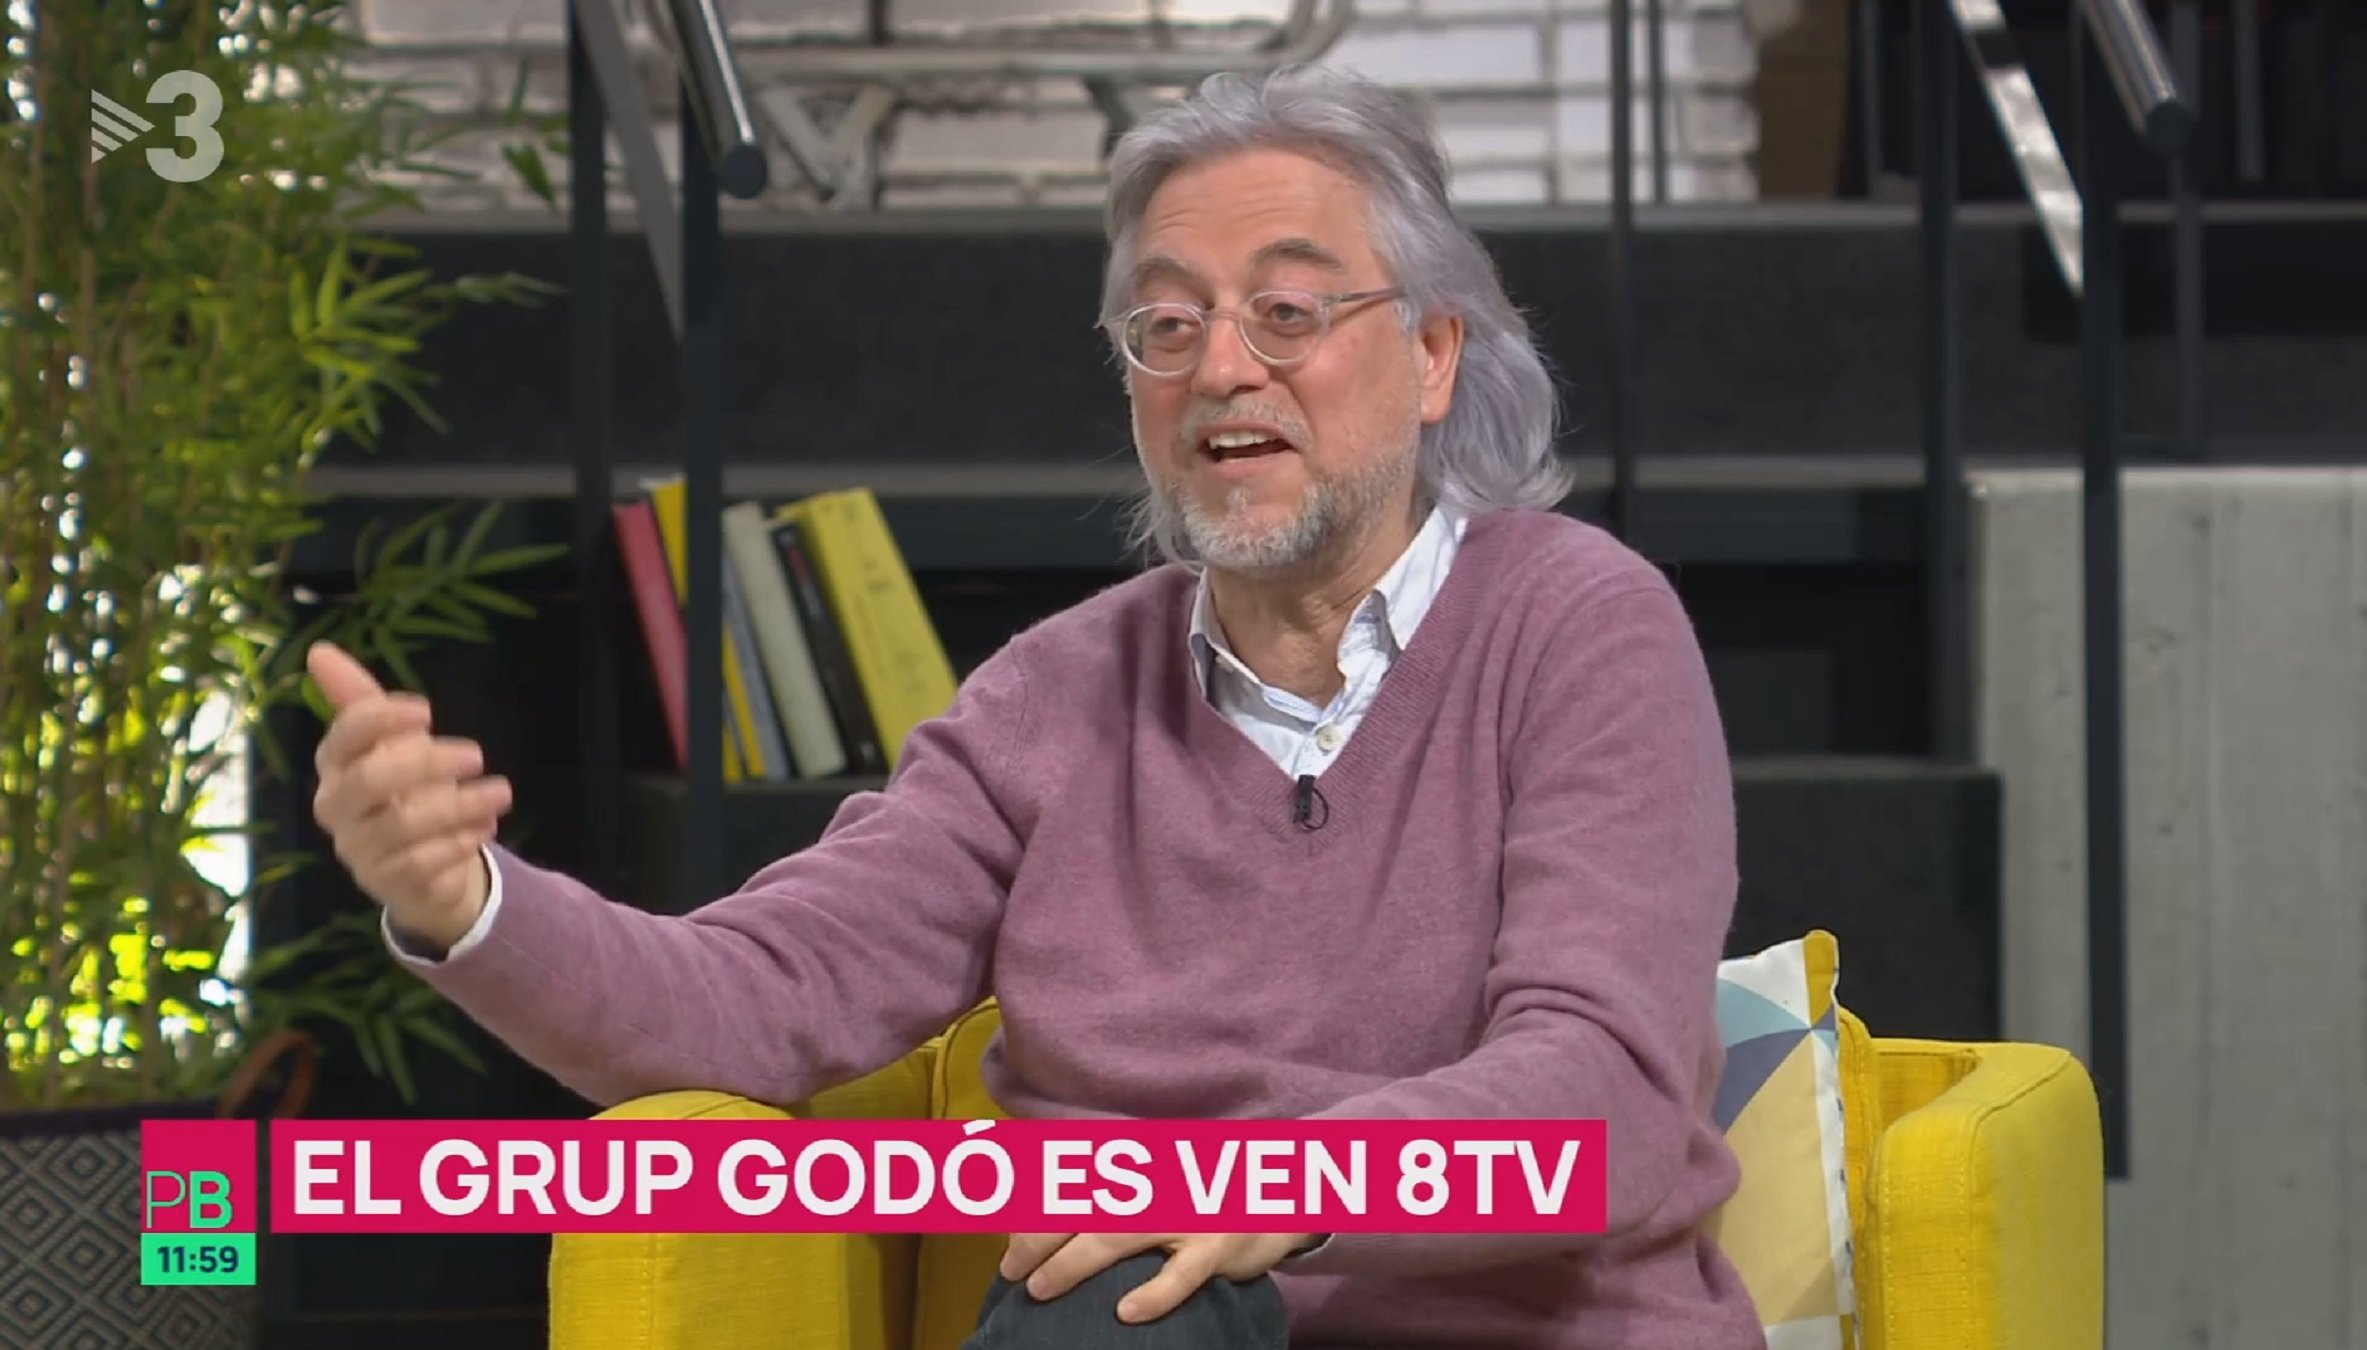 Víctor Amela justifica en el programa de Ustrell por qué su Grupo Godó vende 8tv